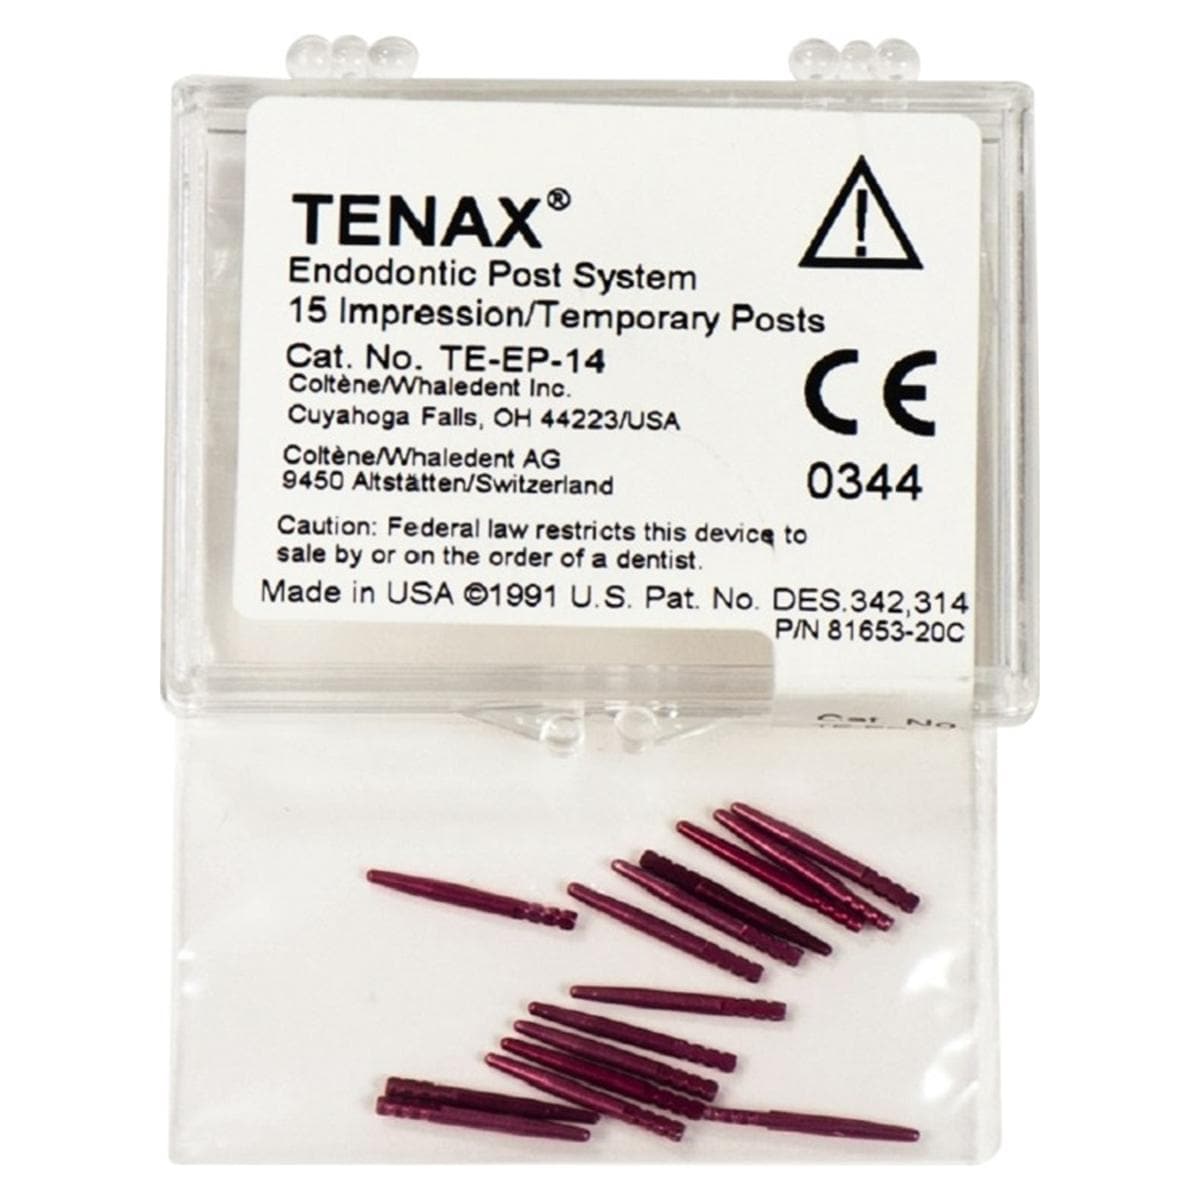 Tenax Afdrukstiften - Te-EP-14 rood,  1,4 mm